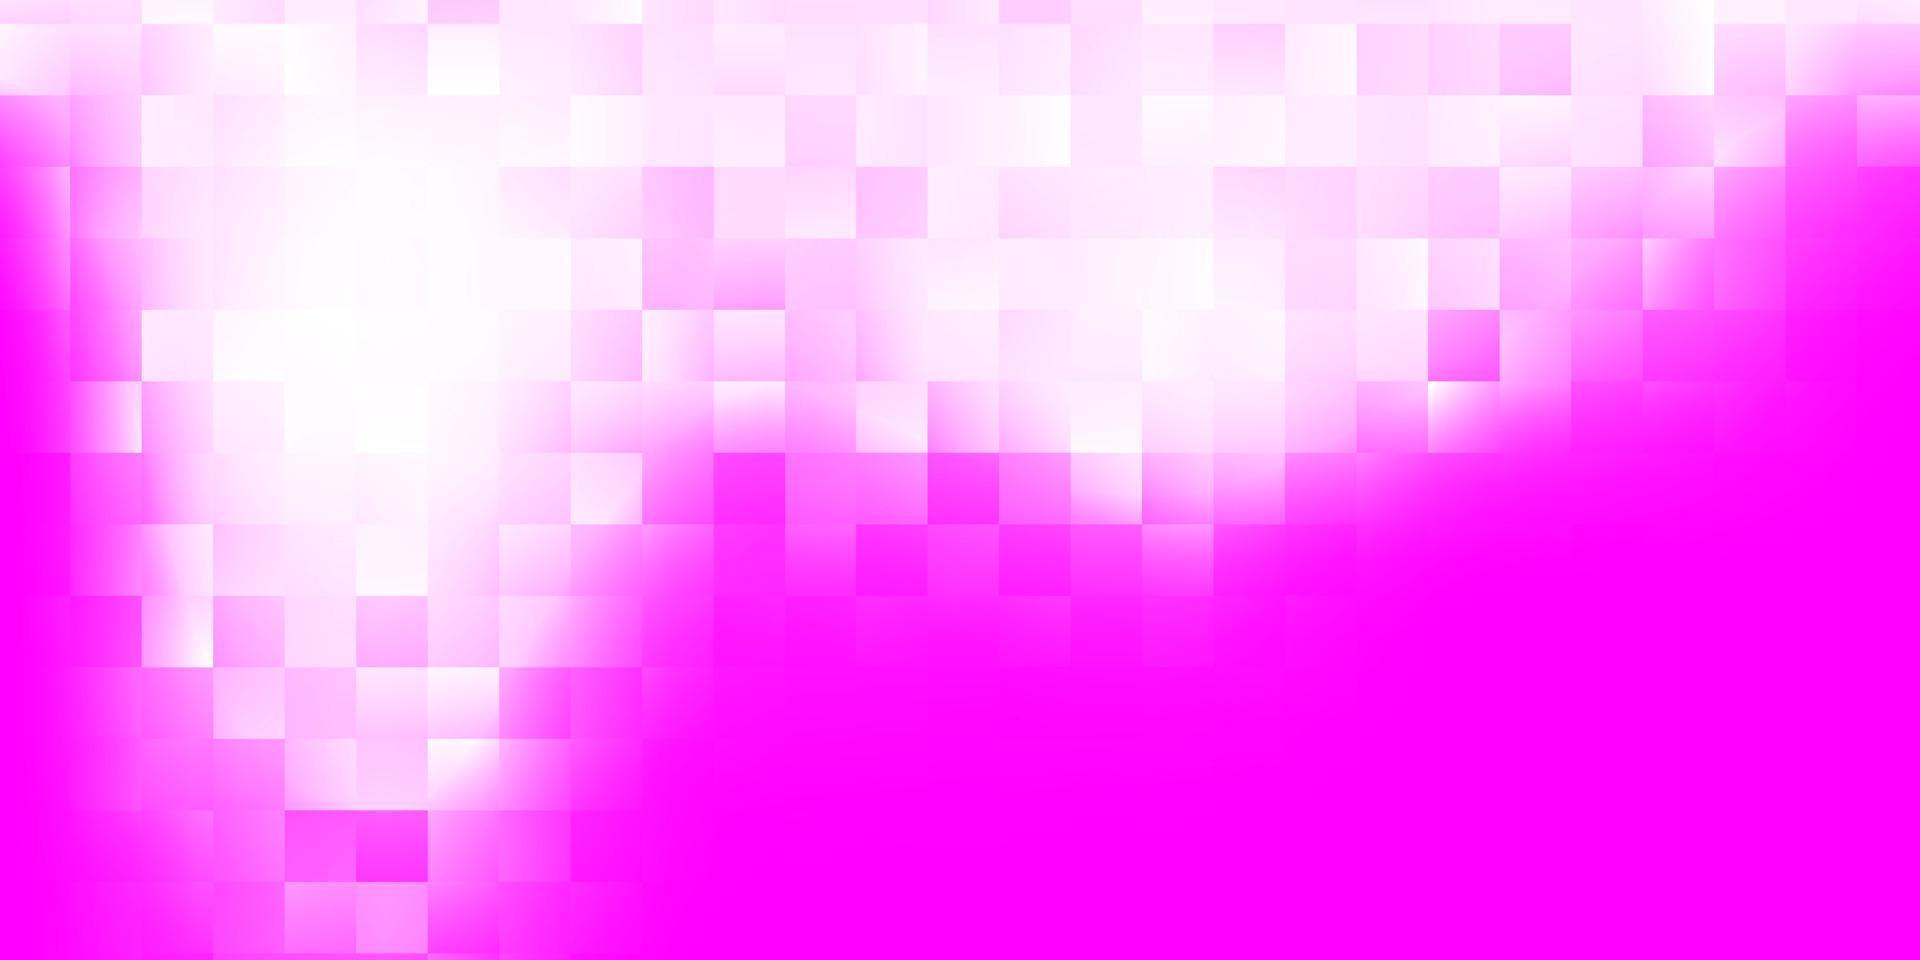 toile de fond de vecteur violet clair, rose avec des formes chaotiques.